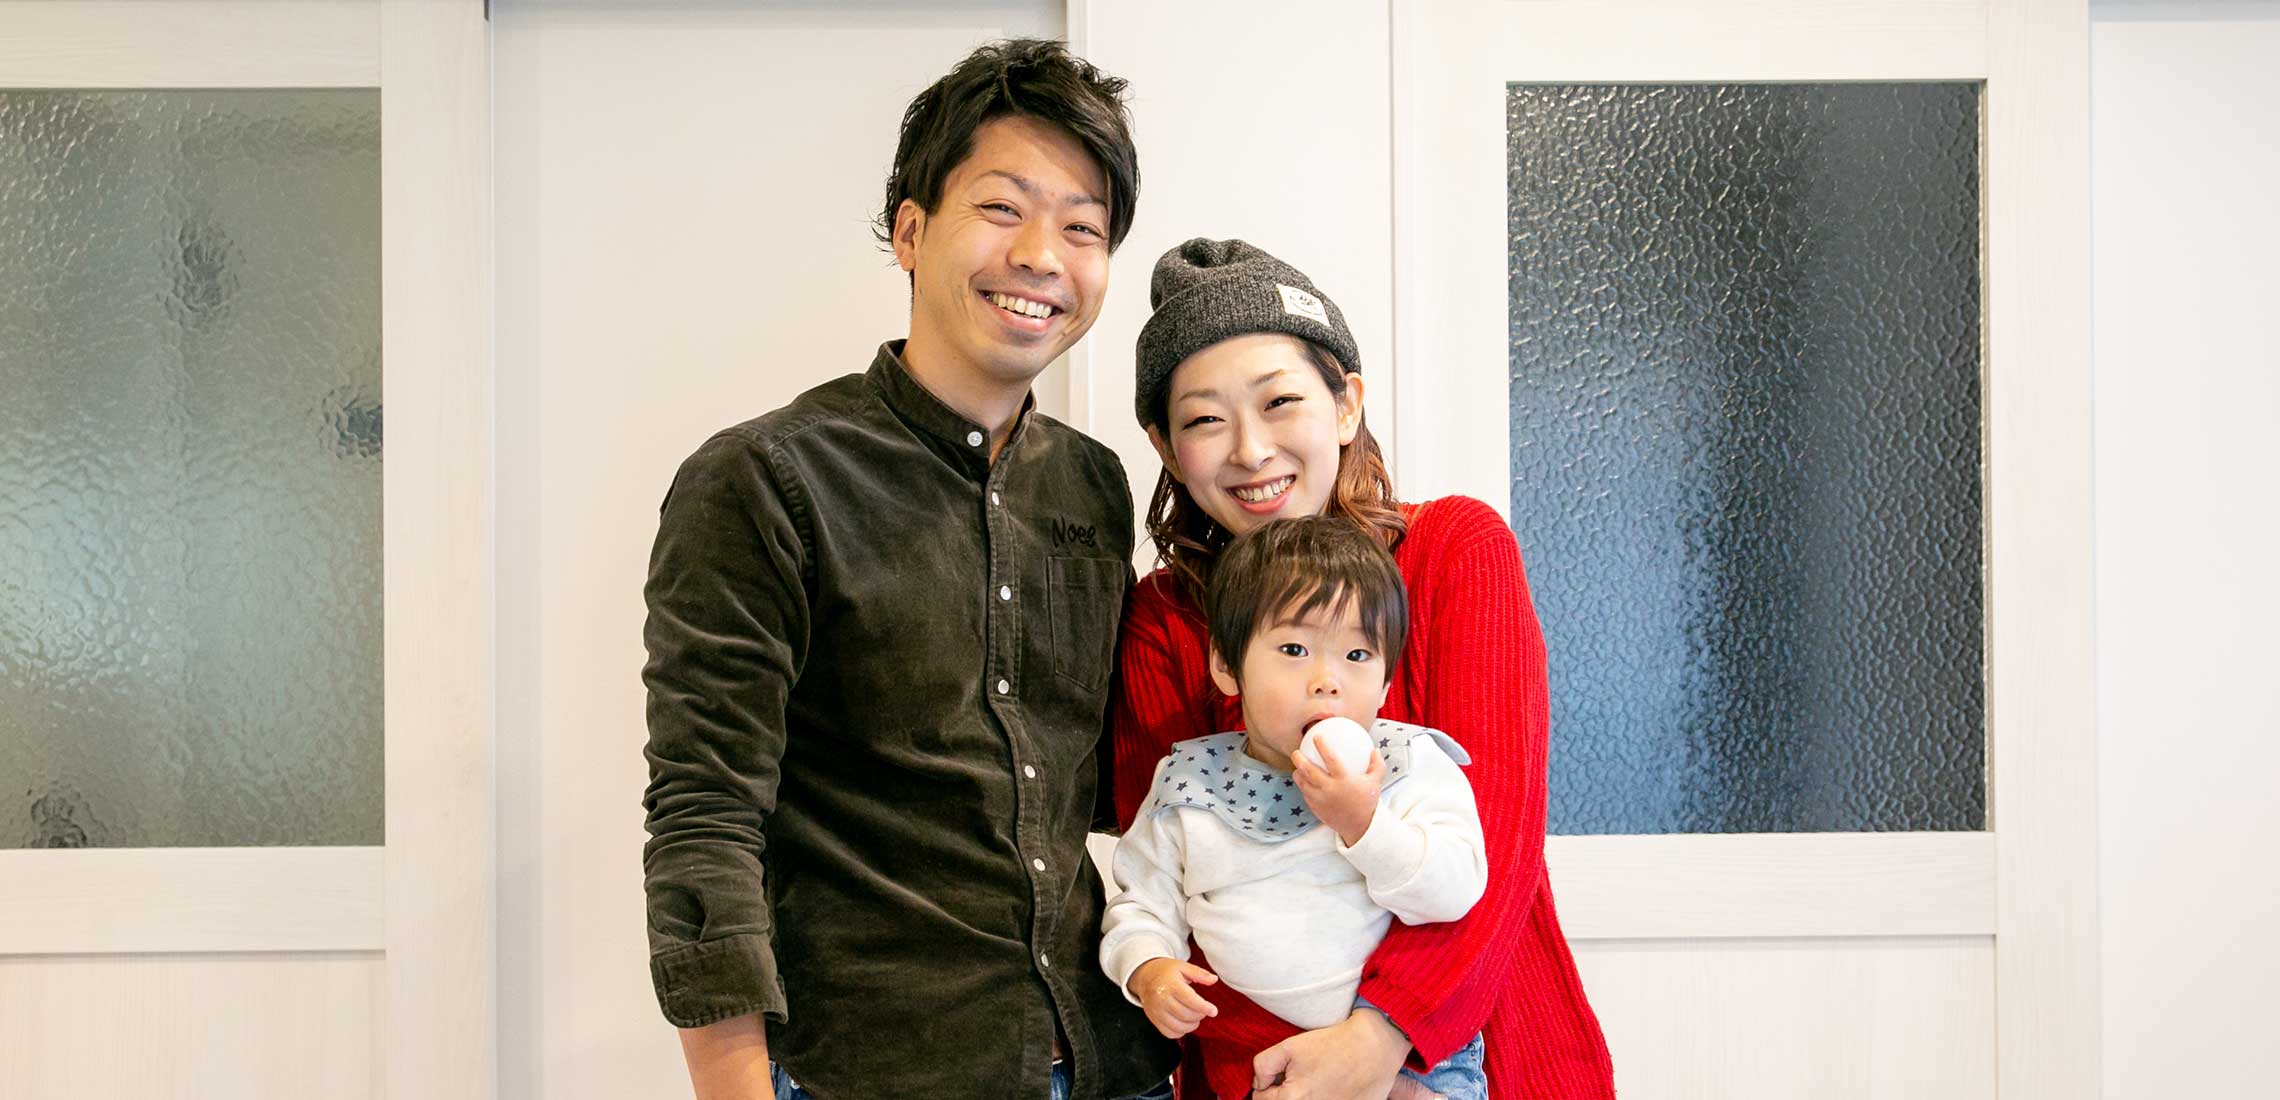 TAKEUCHI FAMILY